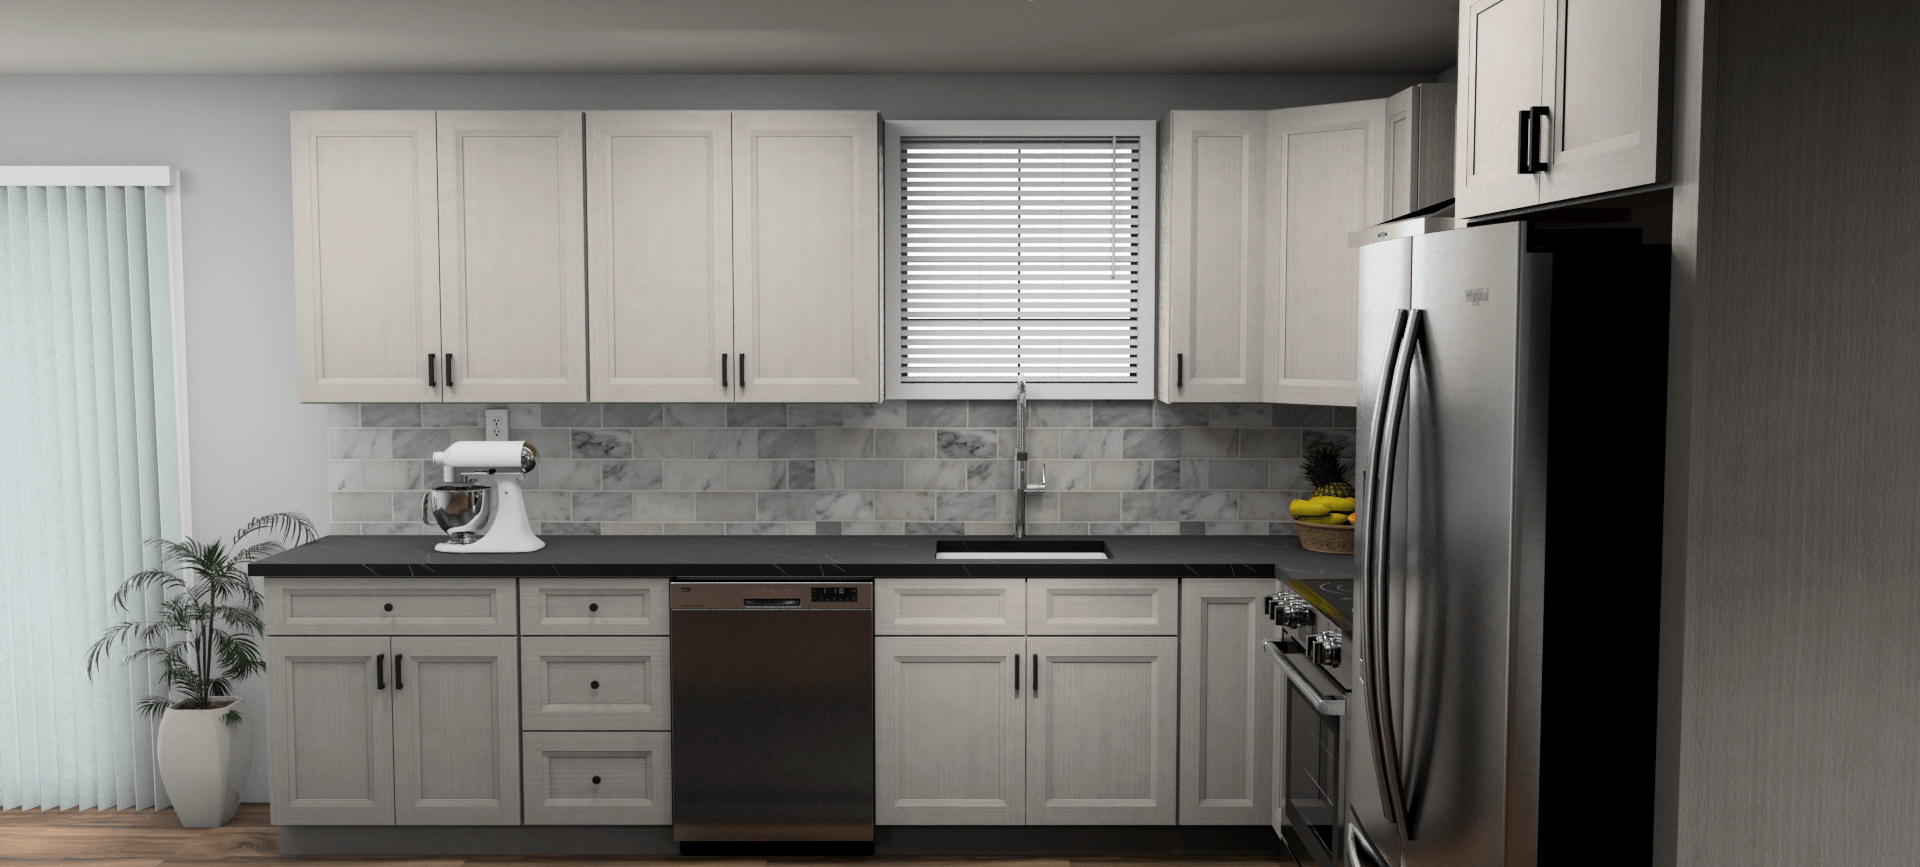 Fabuwood Allure Onyx Horizon 12 x 11 L Shaped Kitchen Side Layout Photo